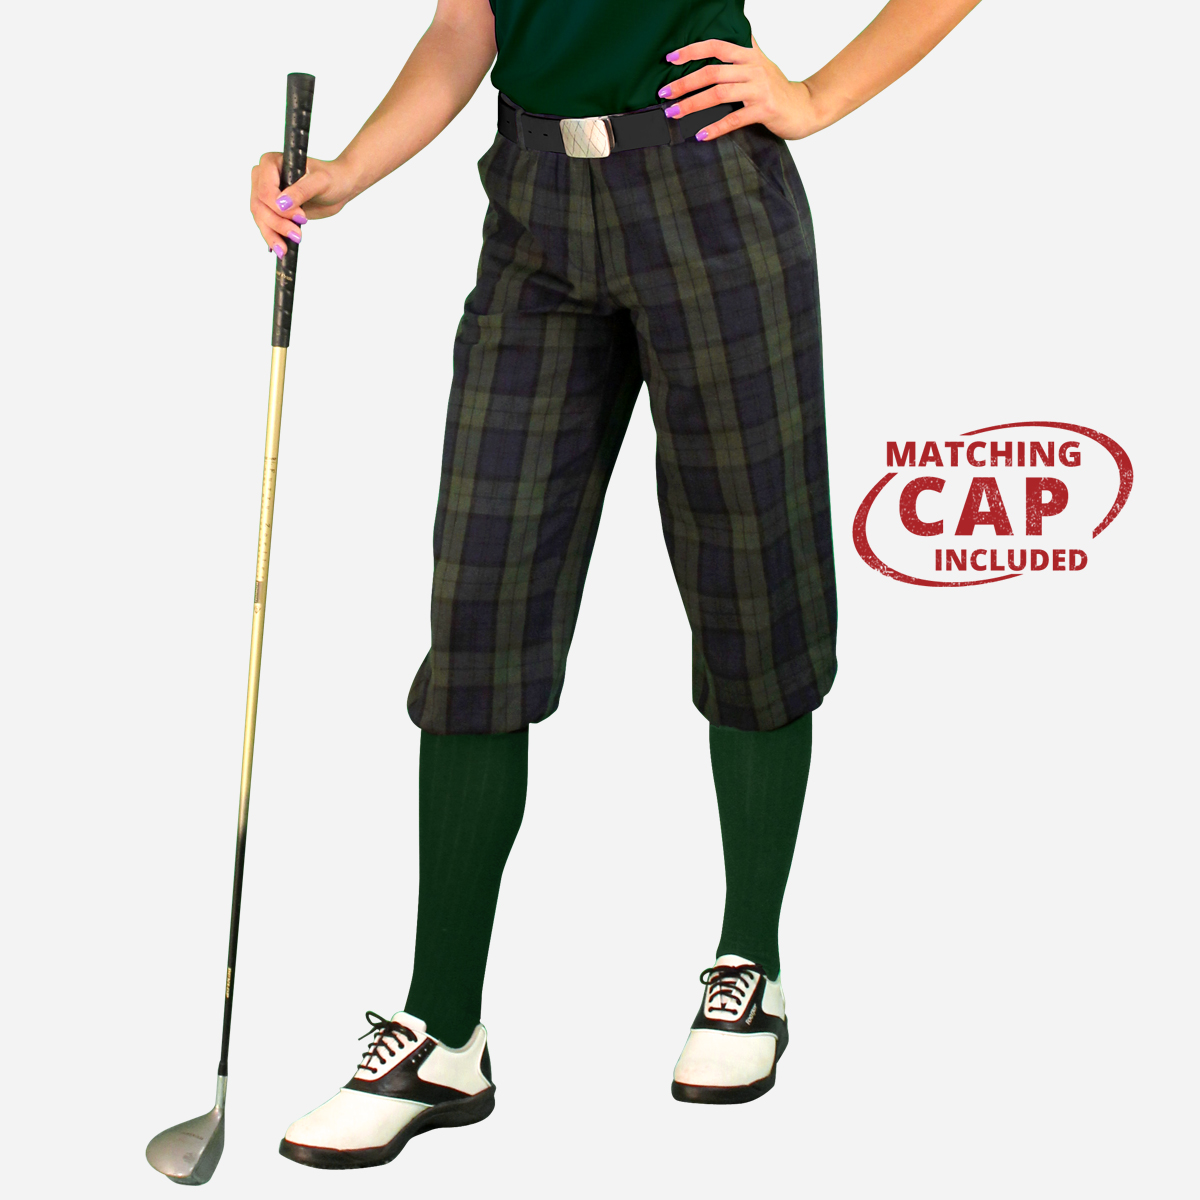 How To Order Women's TBarrys Golf Knickers